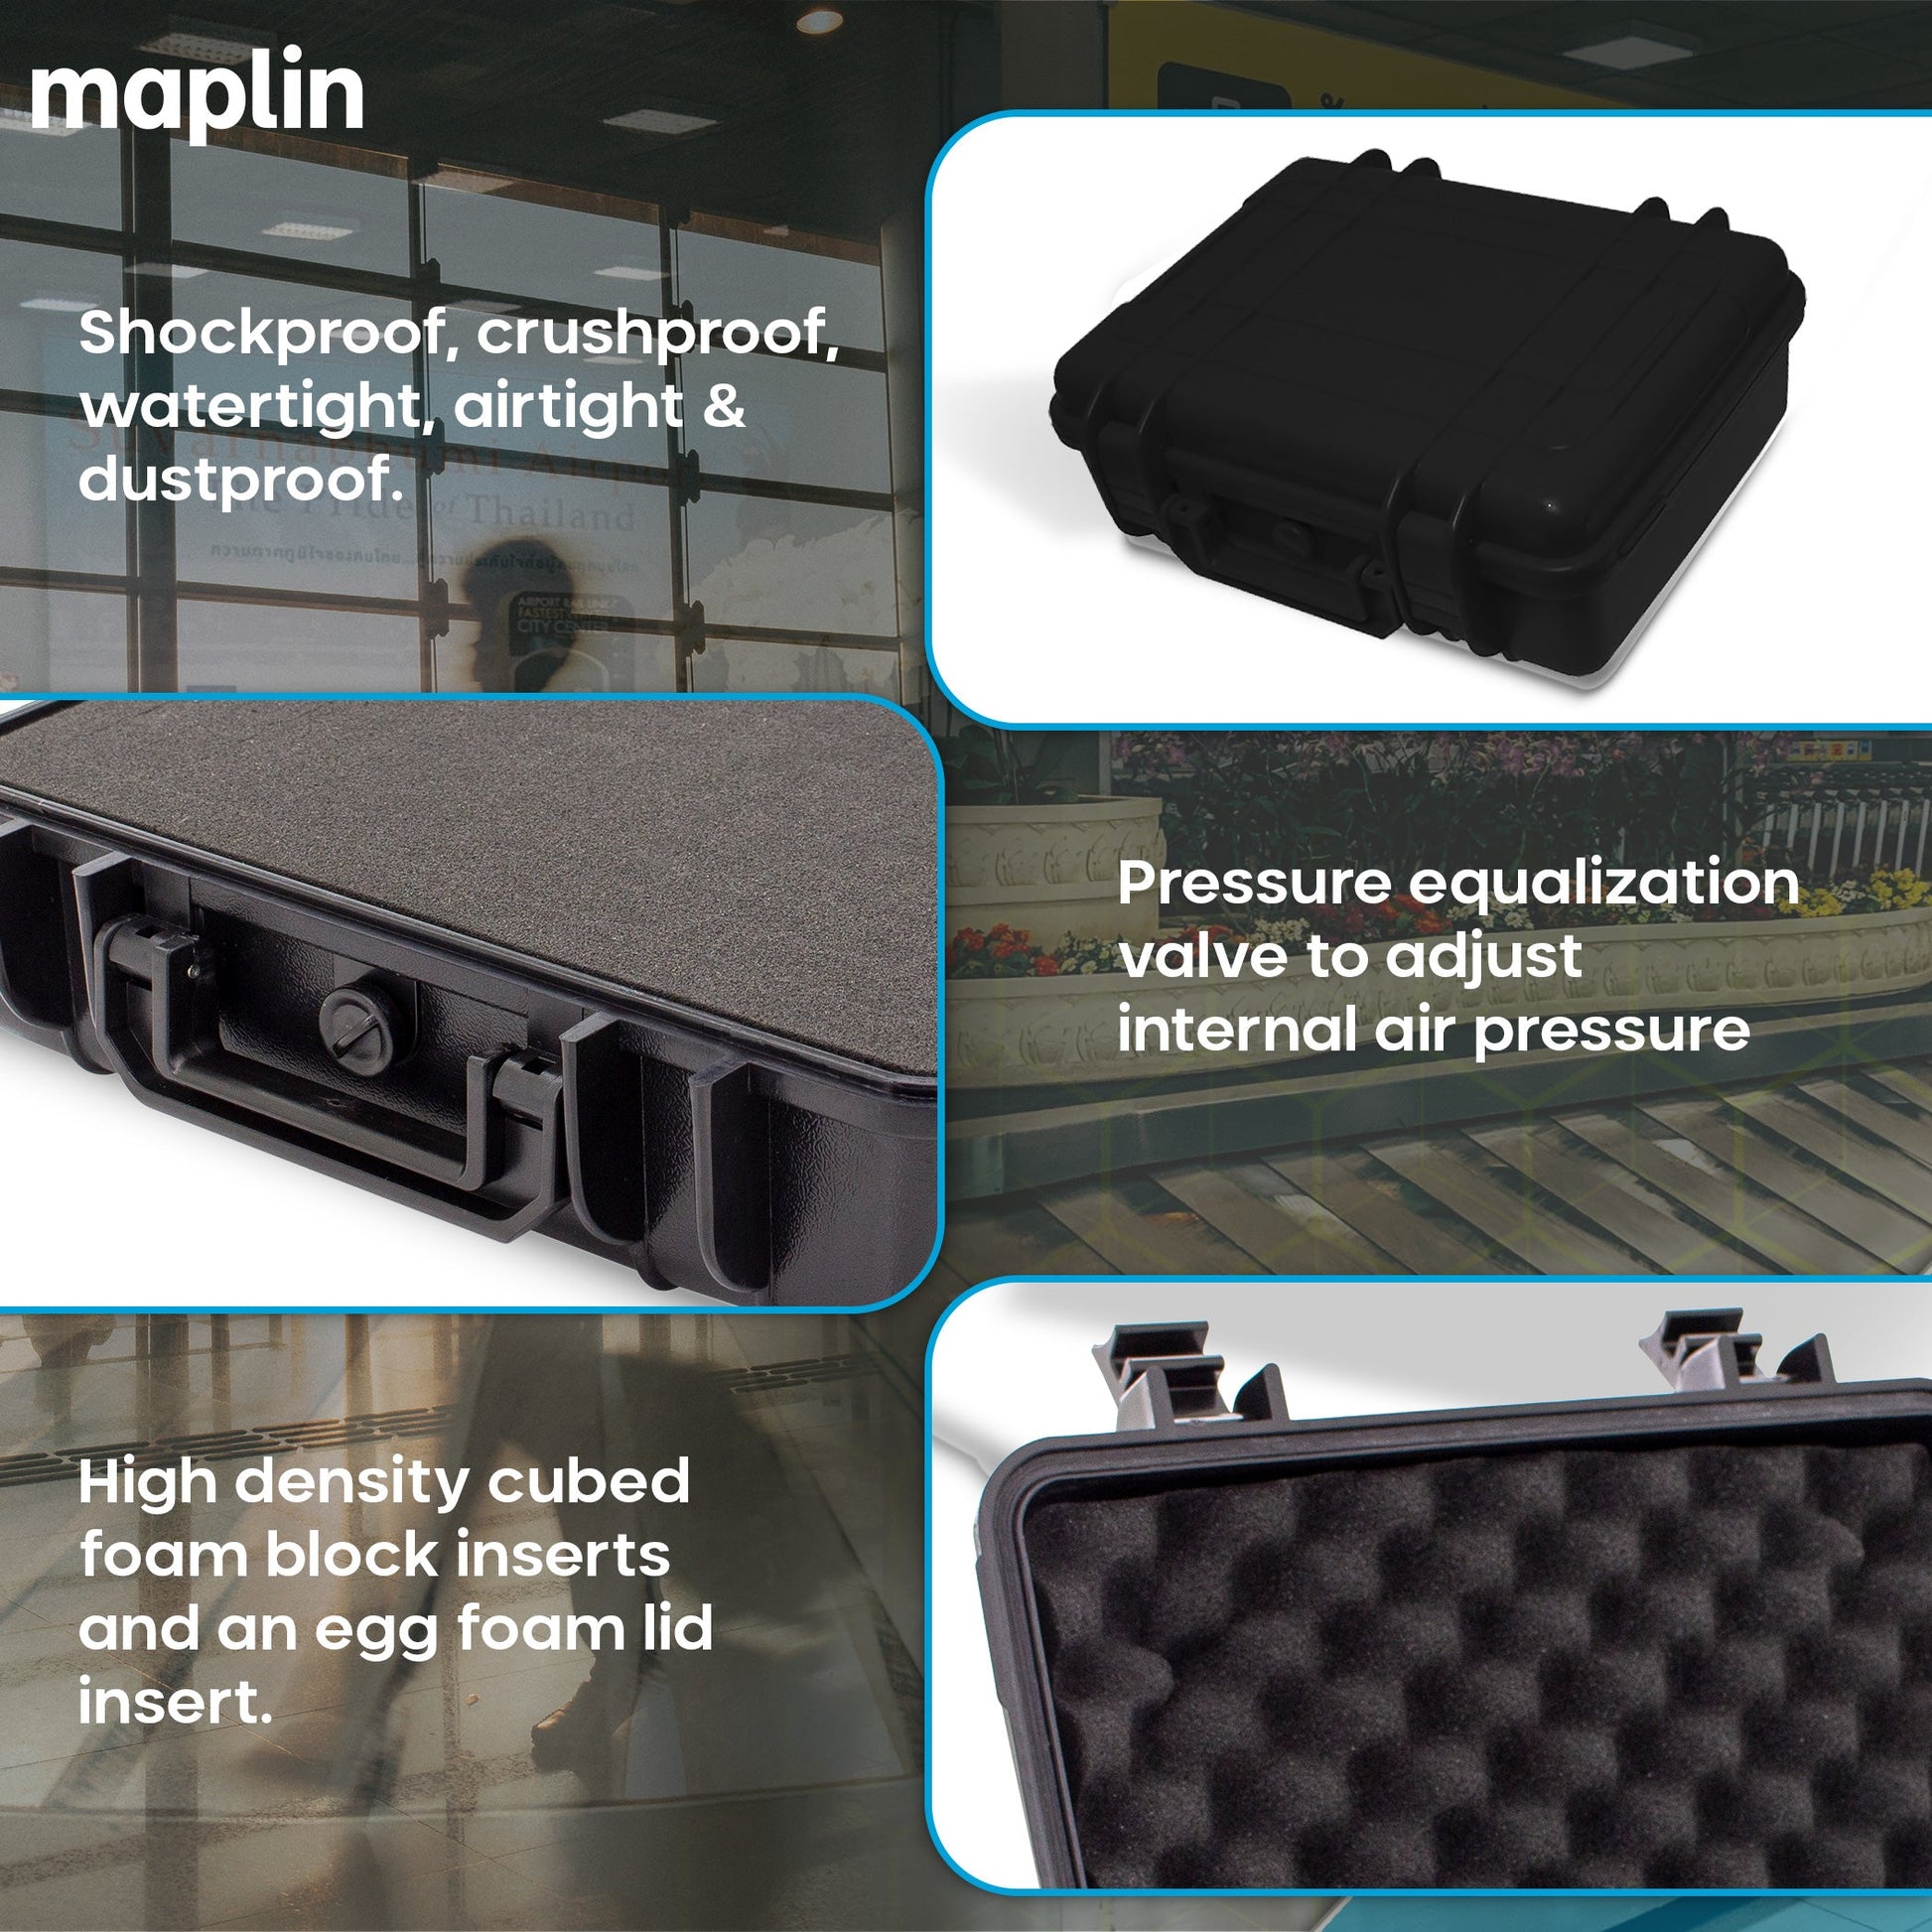 Maplin Plus Shockproof & Waterproof 95 x 275 x 200mm Flight Case - Black - maplin.co.uk